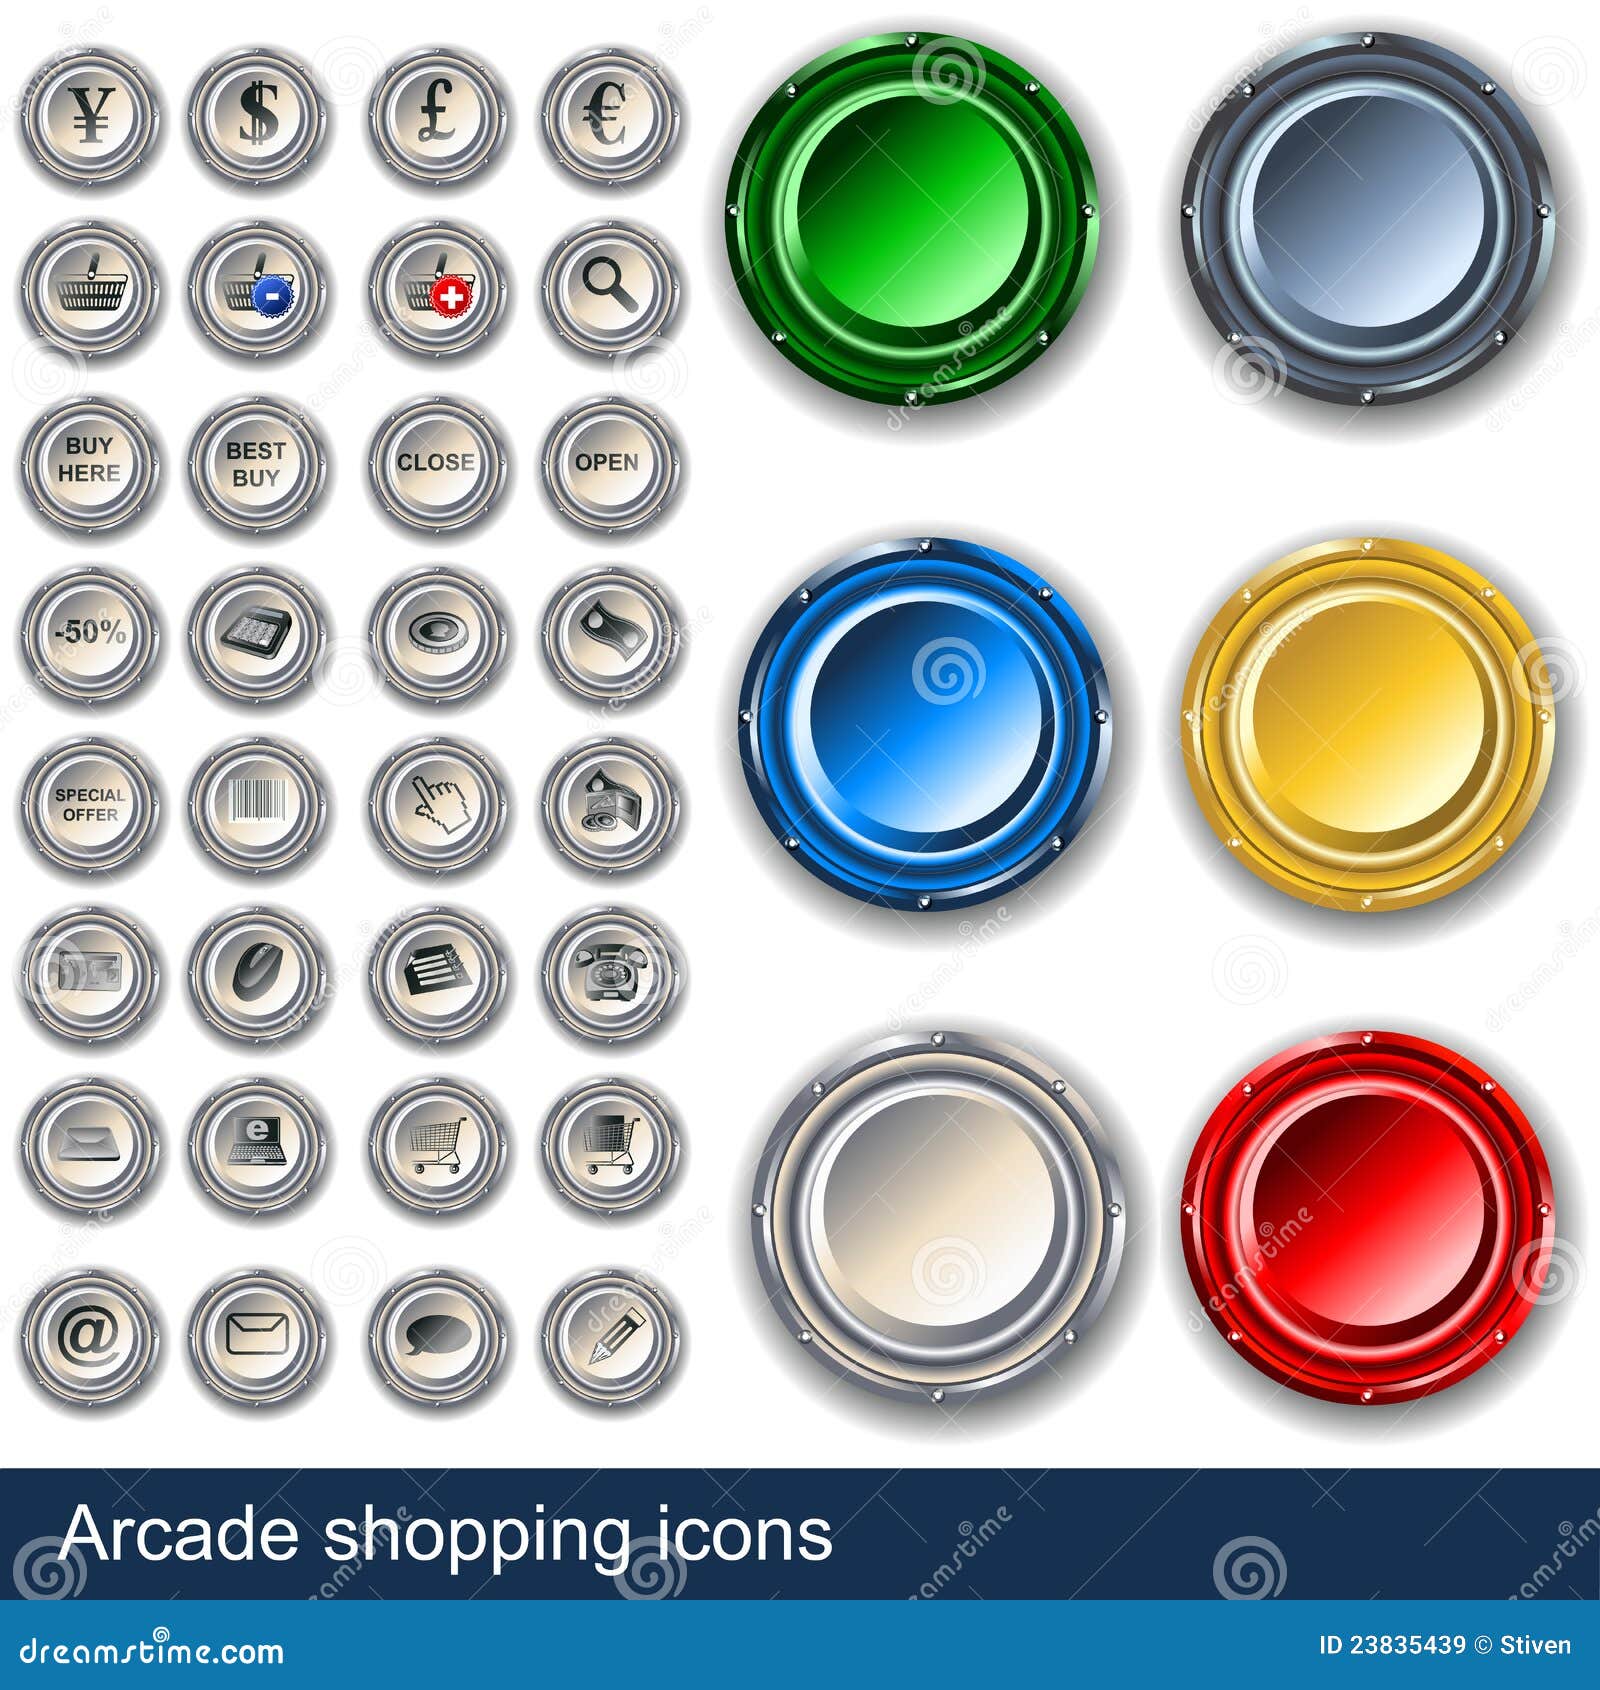 arcade shopping buttons